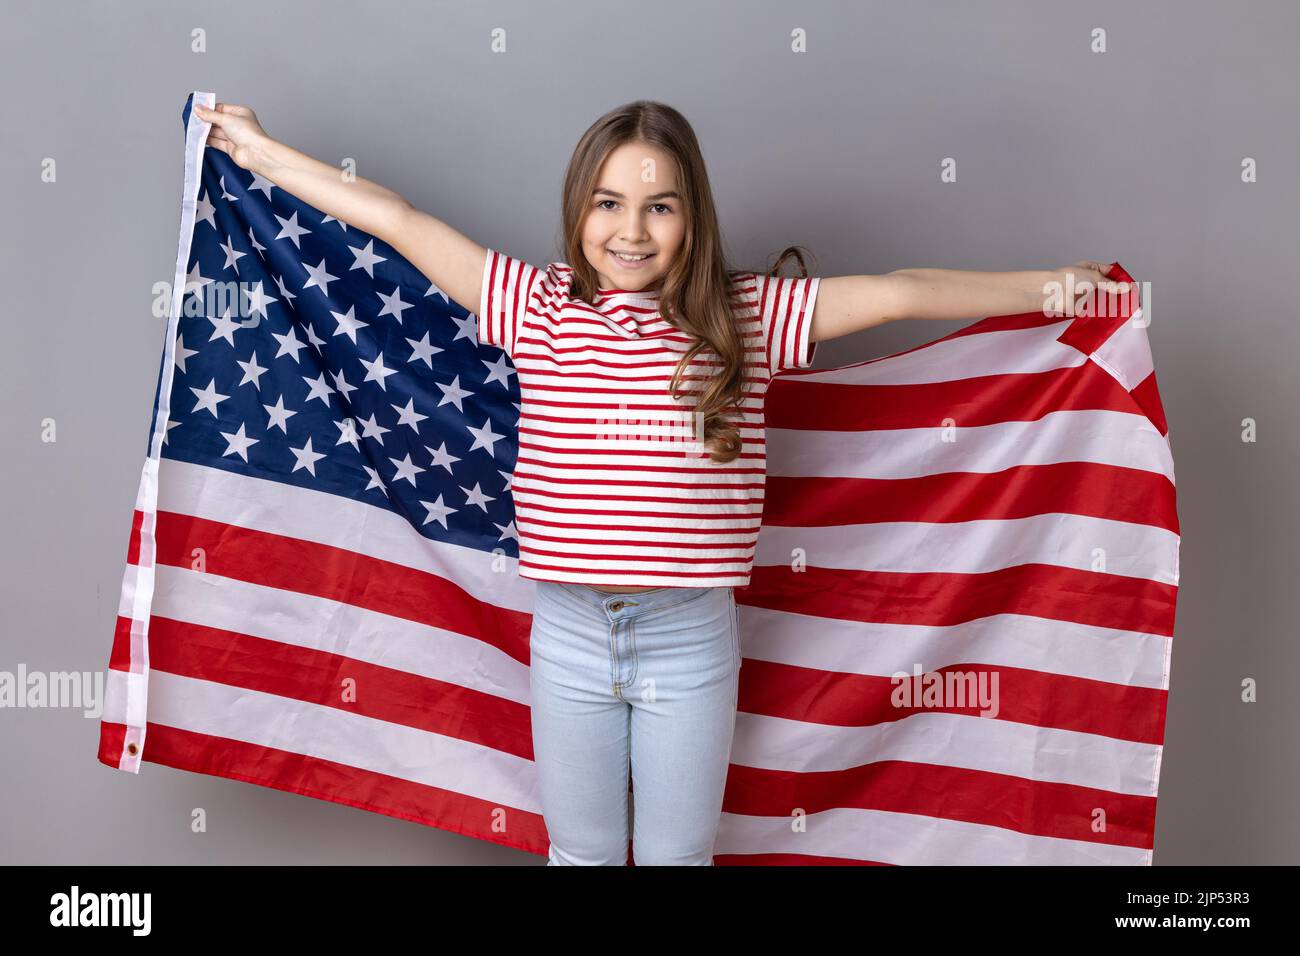 Porträt eines winsigen kleinen Mädchens in einem gestreiften T-Shirt mit einer riesigen amerikanischen Flagge, das fröhlich brüllt und den Nationalfeiertag feiert. Innenaufnahme des Studios isoliert auf grauem Hintergrund. Stockfoto